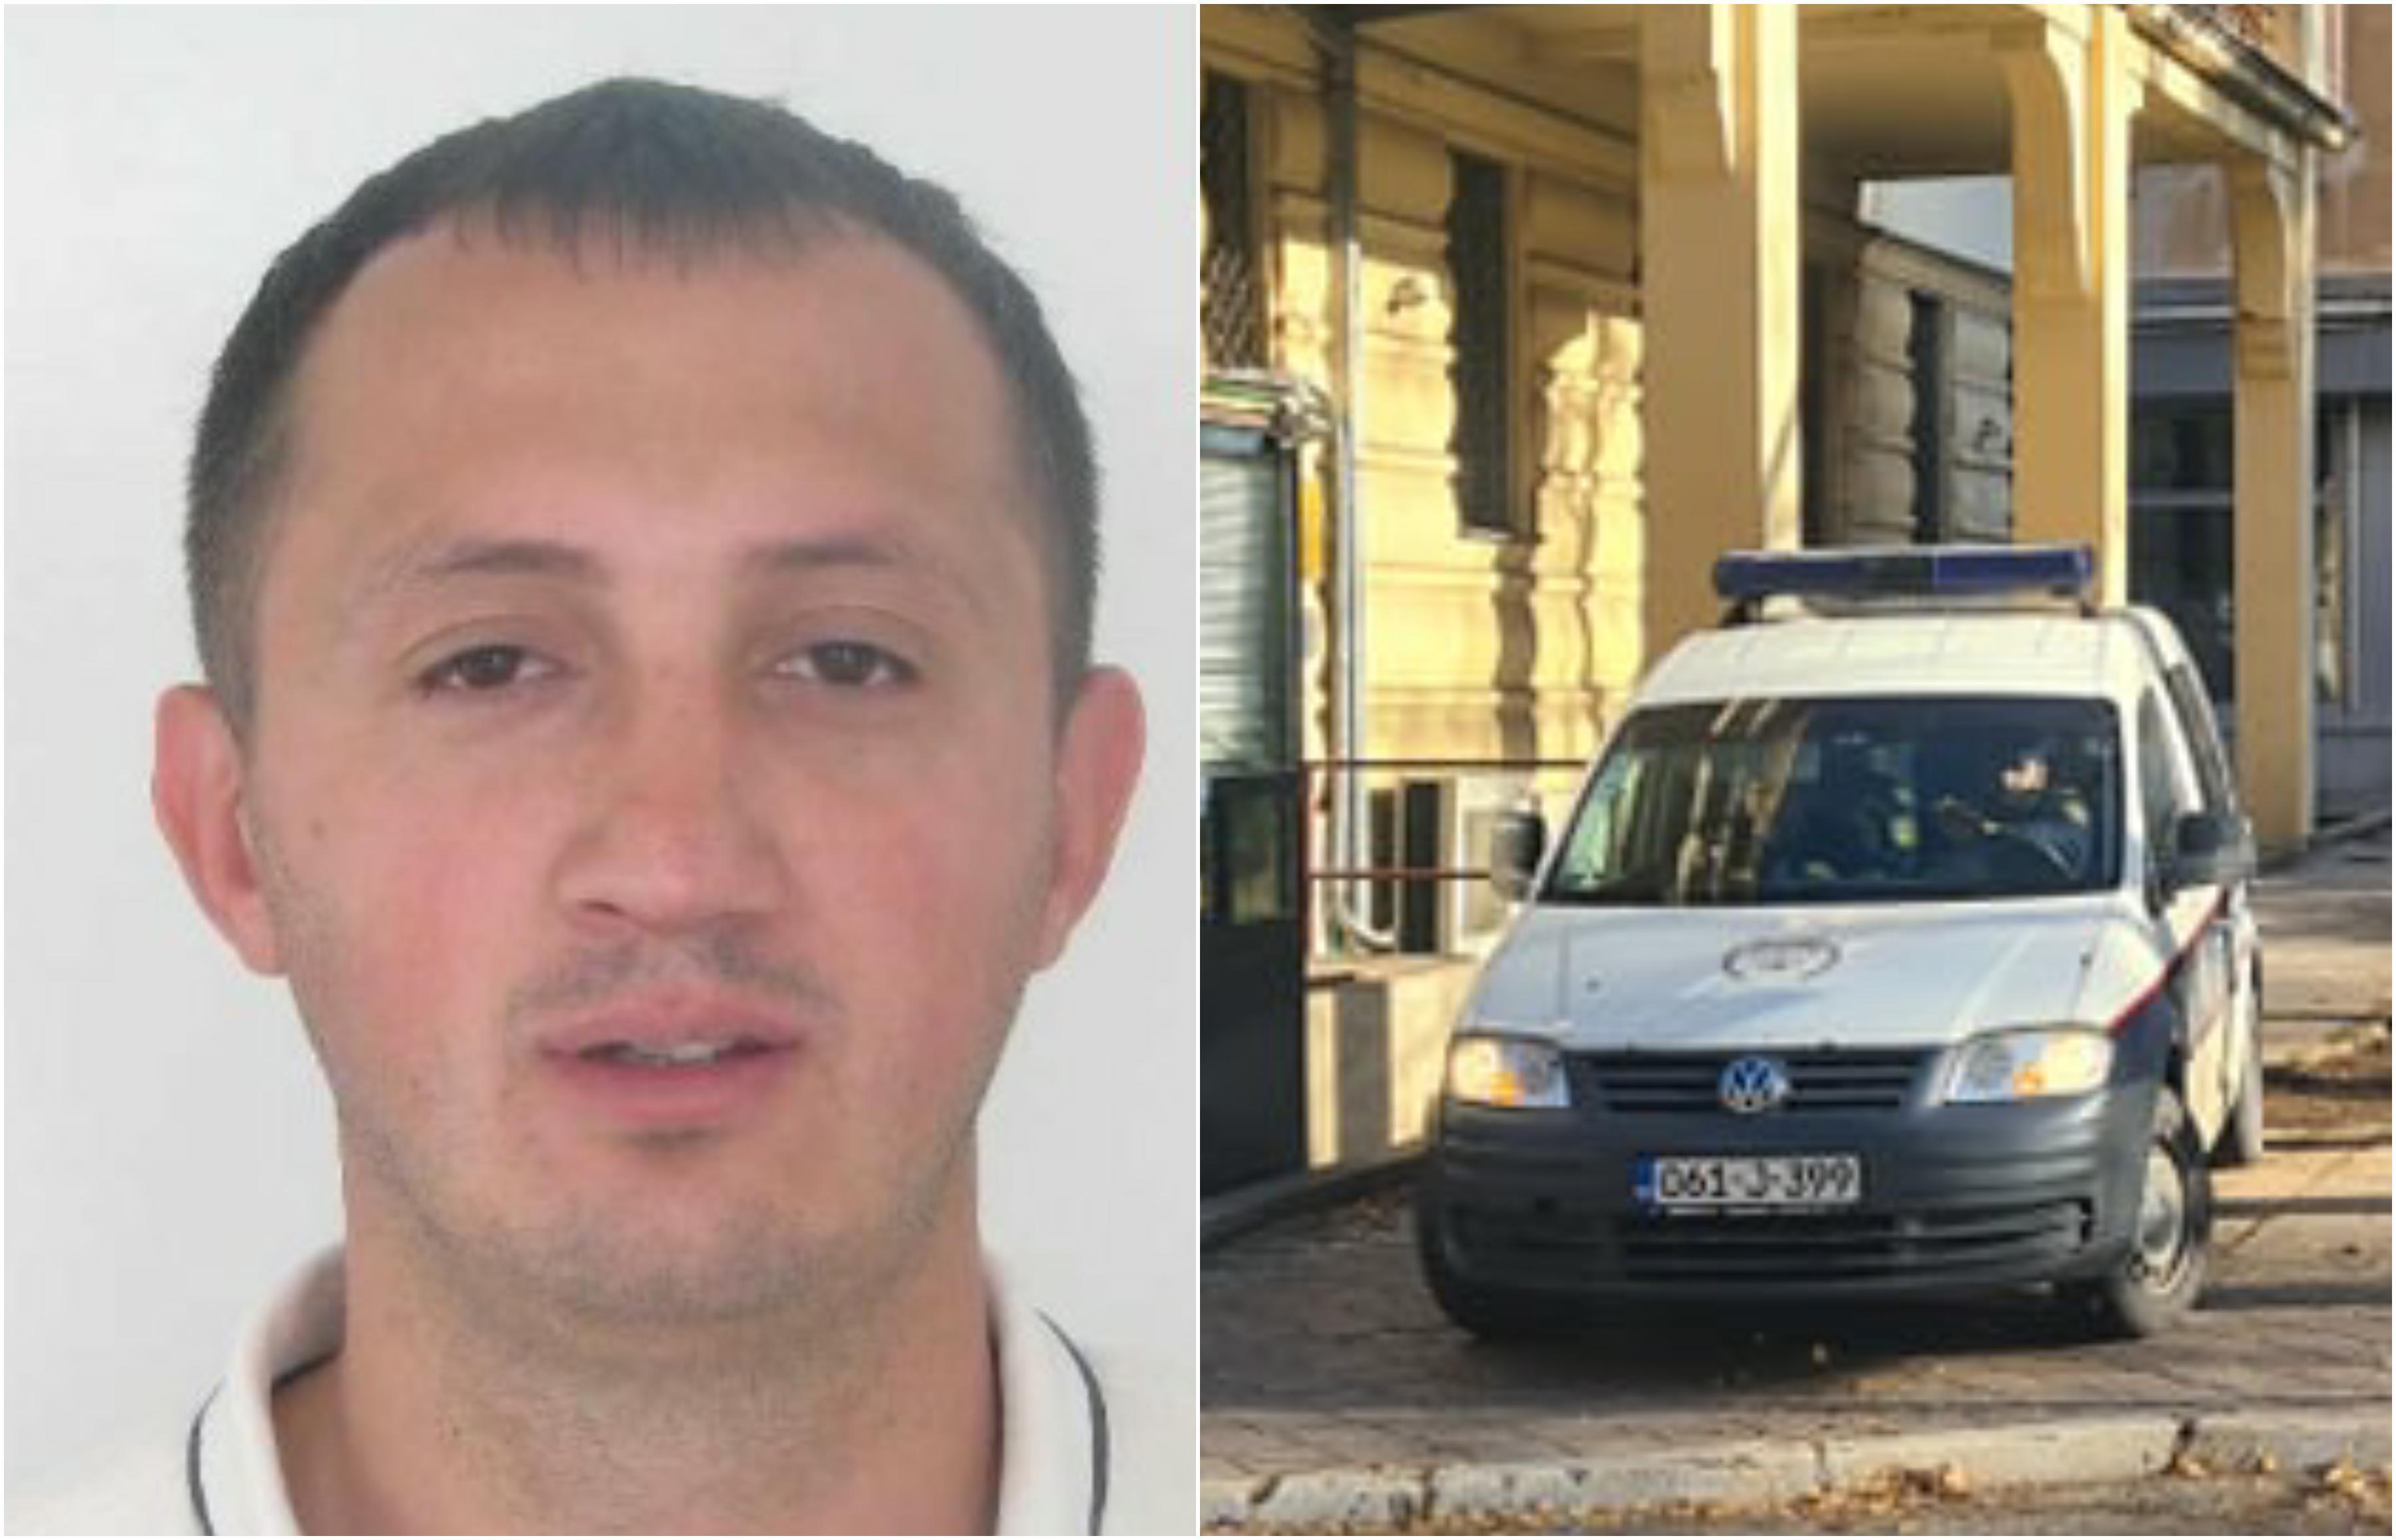 Osumnjičeni za ubistvo policajaca: Aleksandar Macan pet puta u sedam dana napustio prostorije KPZ Miljacka, gdje je bio 35 sati!?